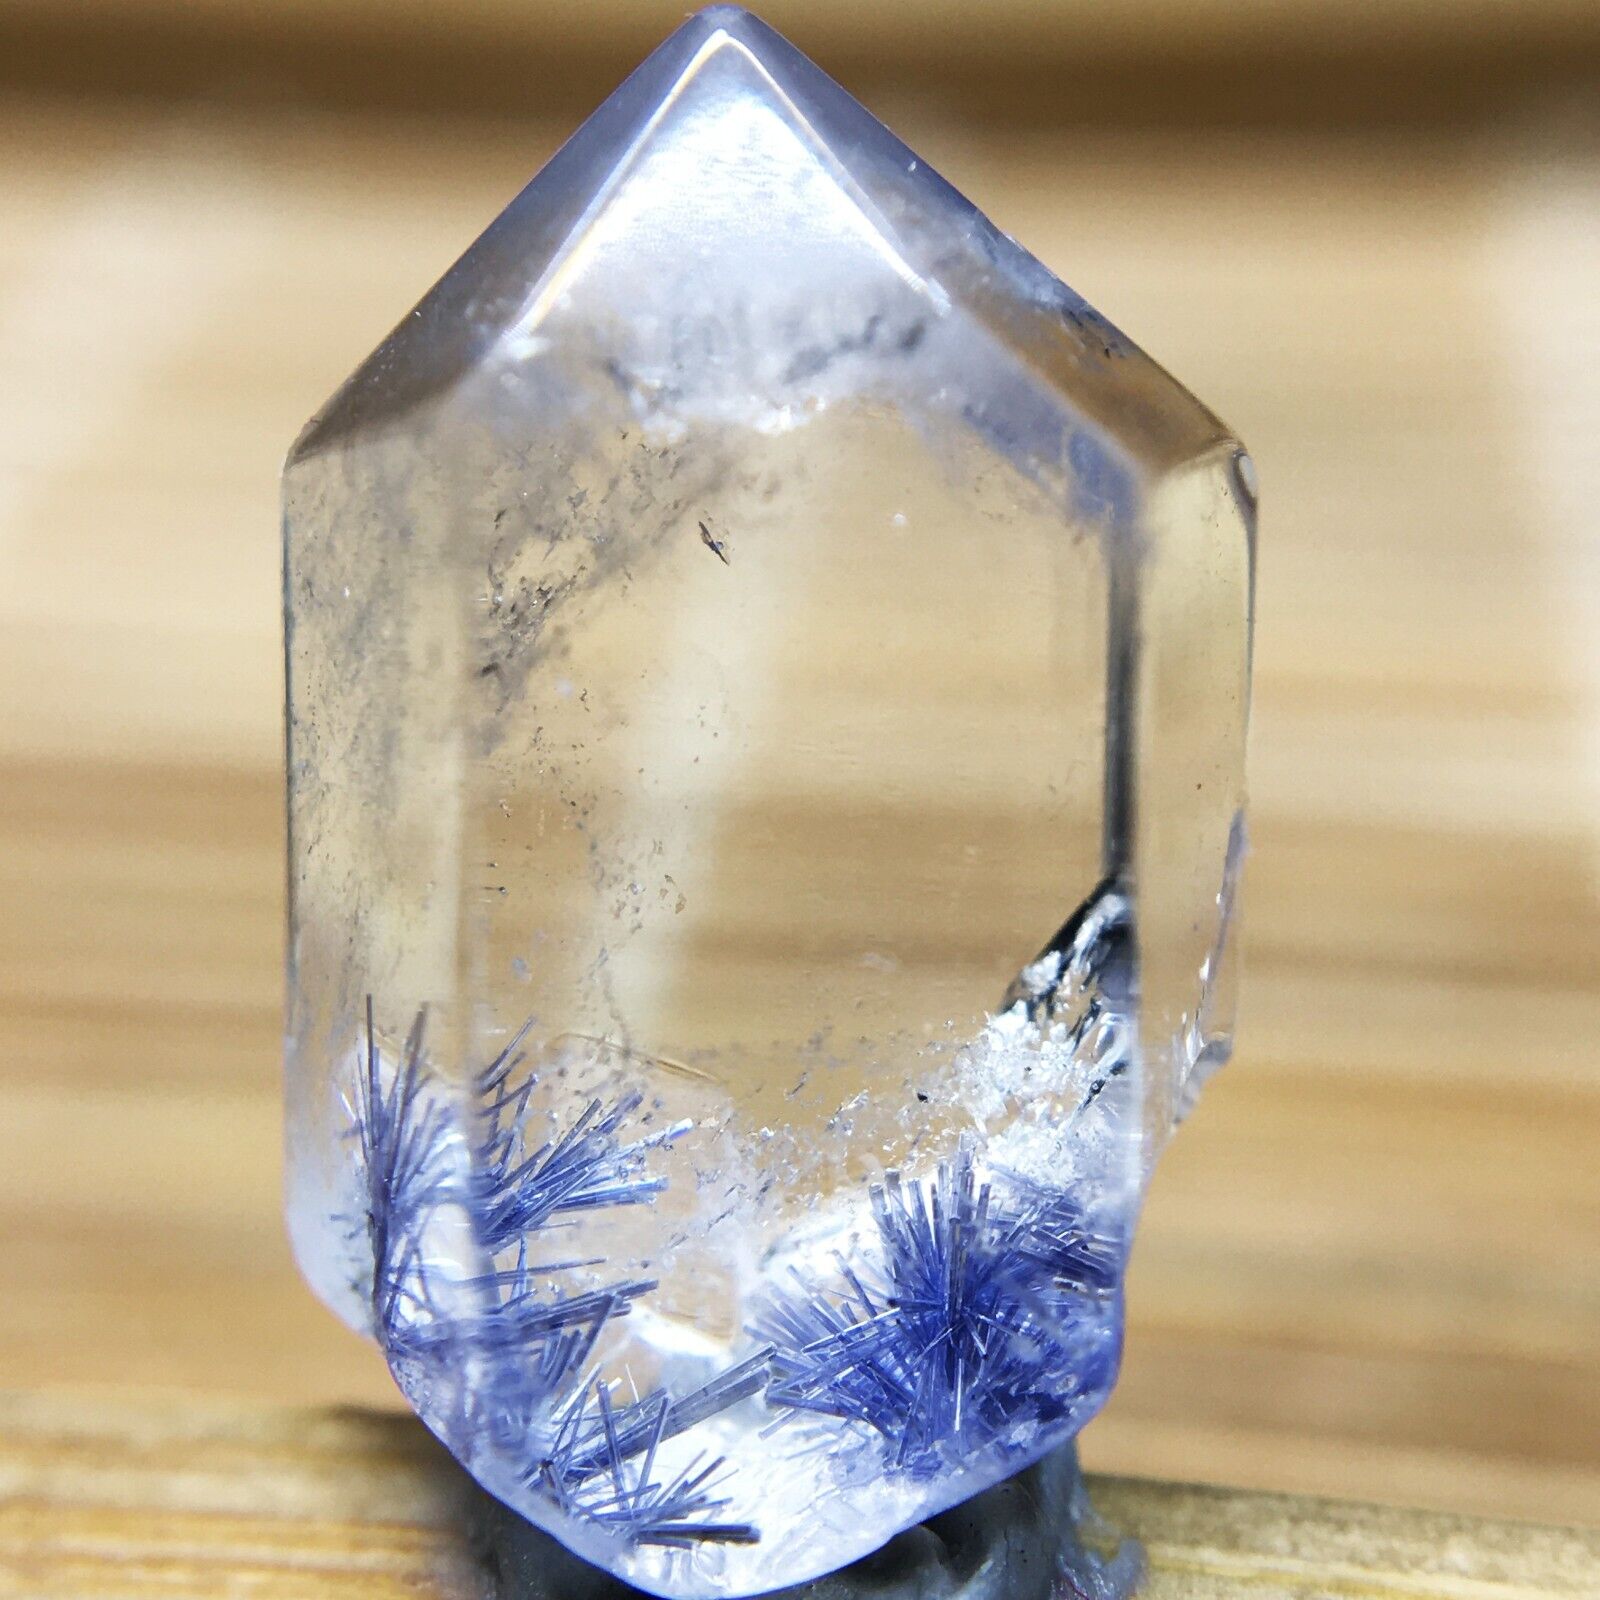 6Ct Very Rare NATURAL Beautiful Blue Dumortierite Quartz Crystal Specimen